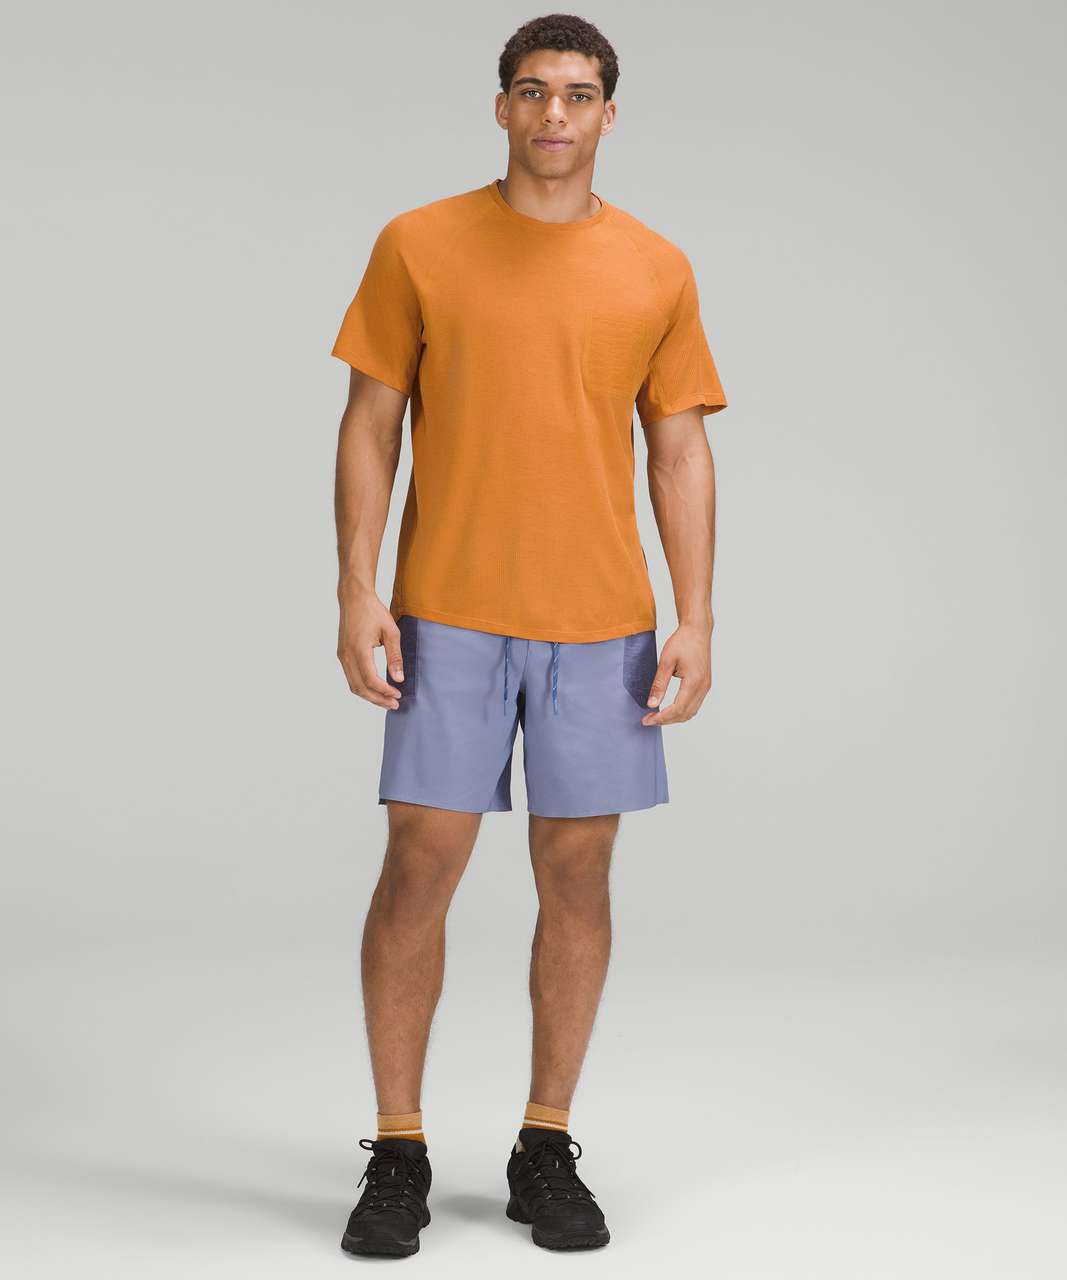 Lululemon Ventilated Hiking Short Sleeve Shirt - Autumn Orange